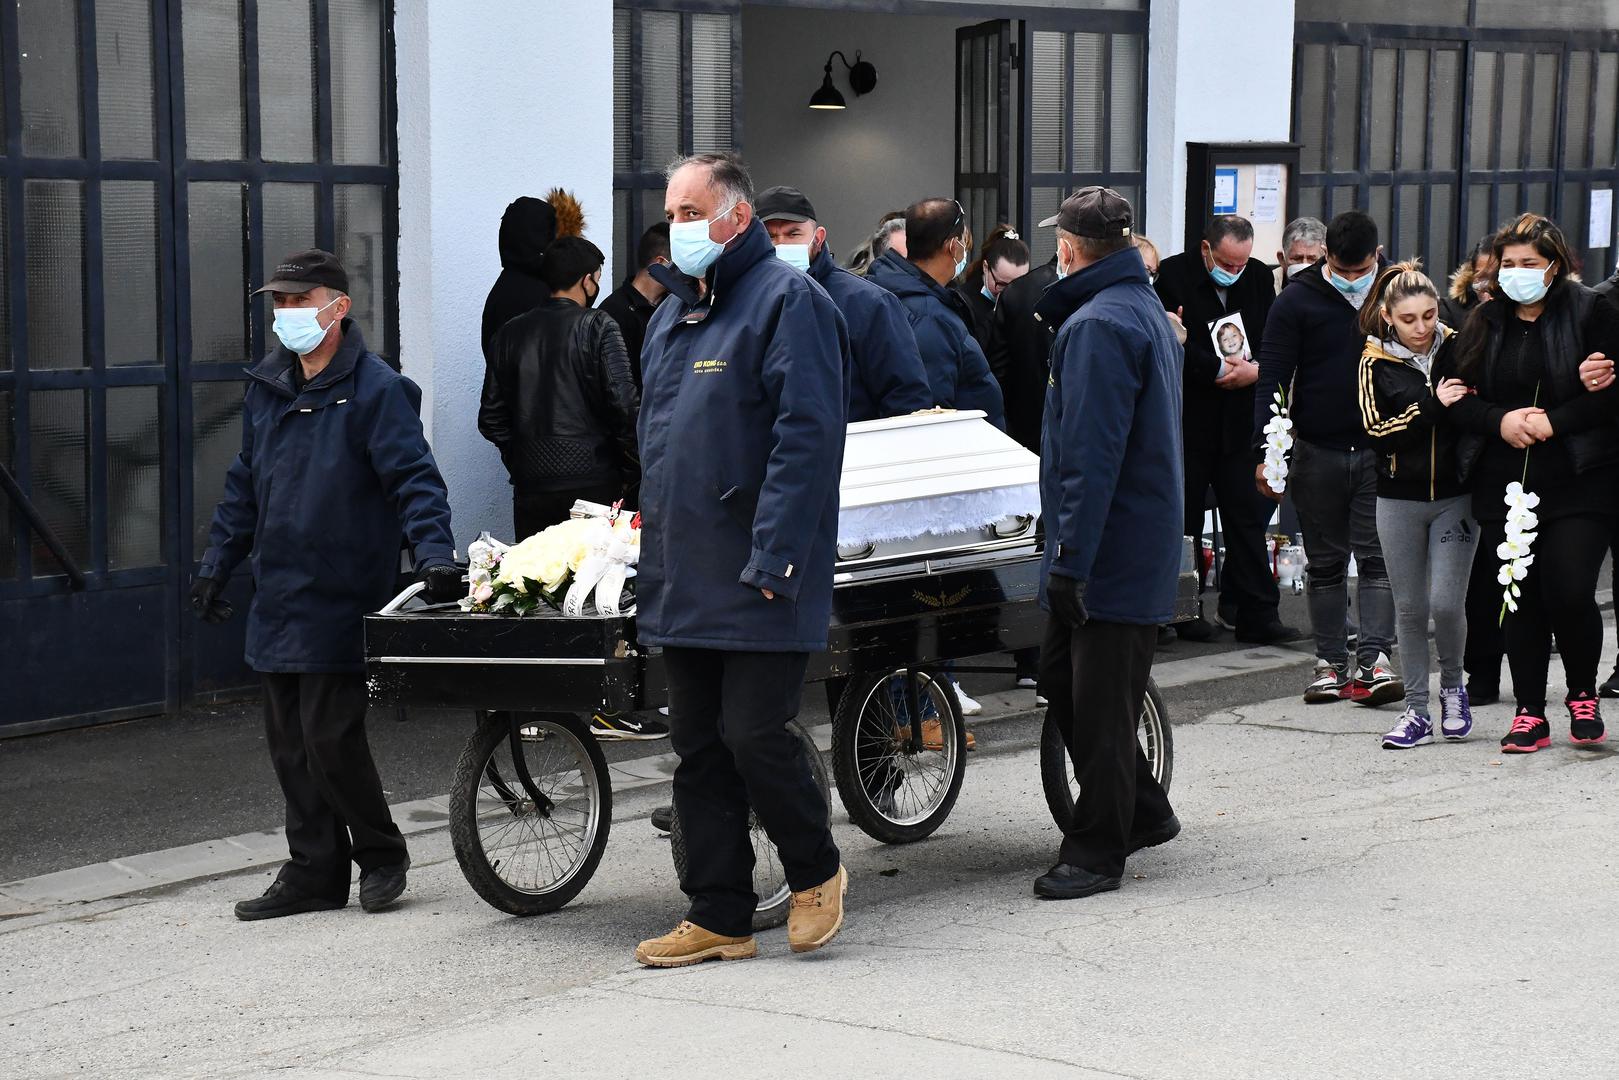 08.04.2021., Nova Gradiska - Pogreb 2.5-godisnje djevojcice Nikoll na gradskom groblju u Novoj Gradiski. Photo: Ivica Galovic/PIXSELL